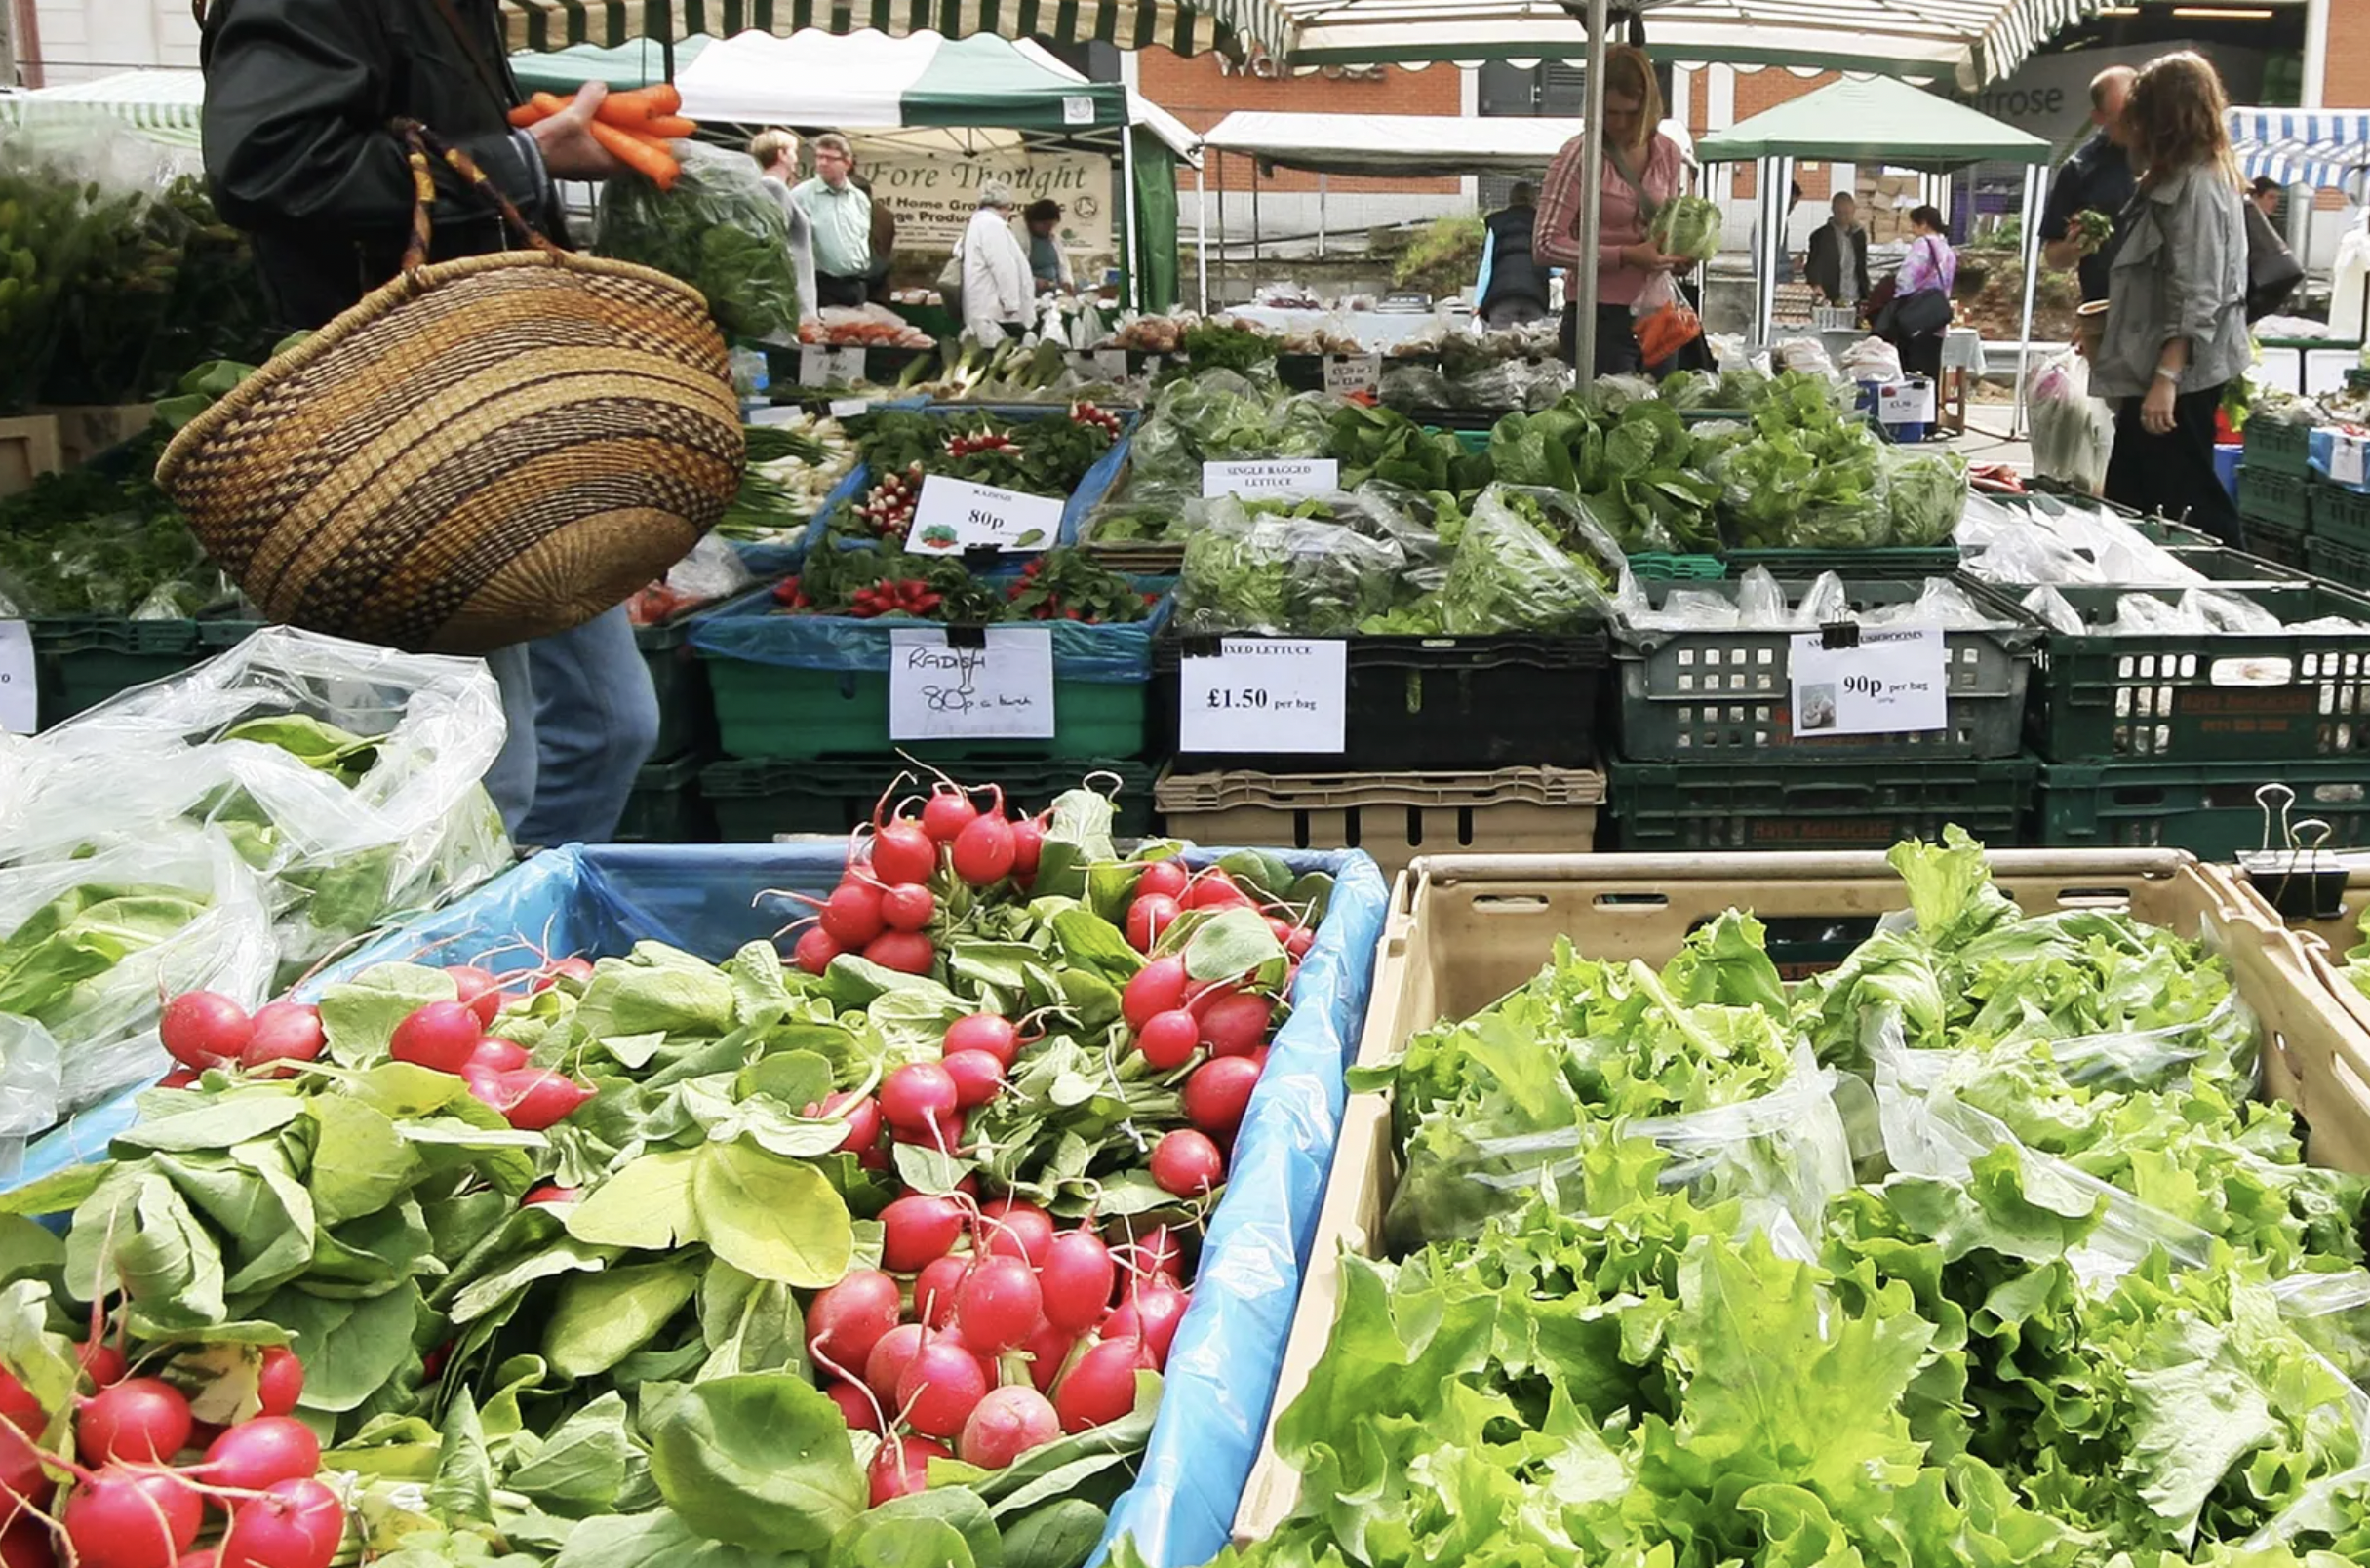 Best Food Markets London - Marylebone Farmers Market